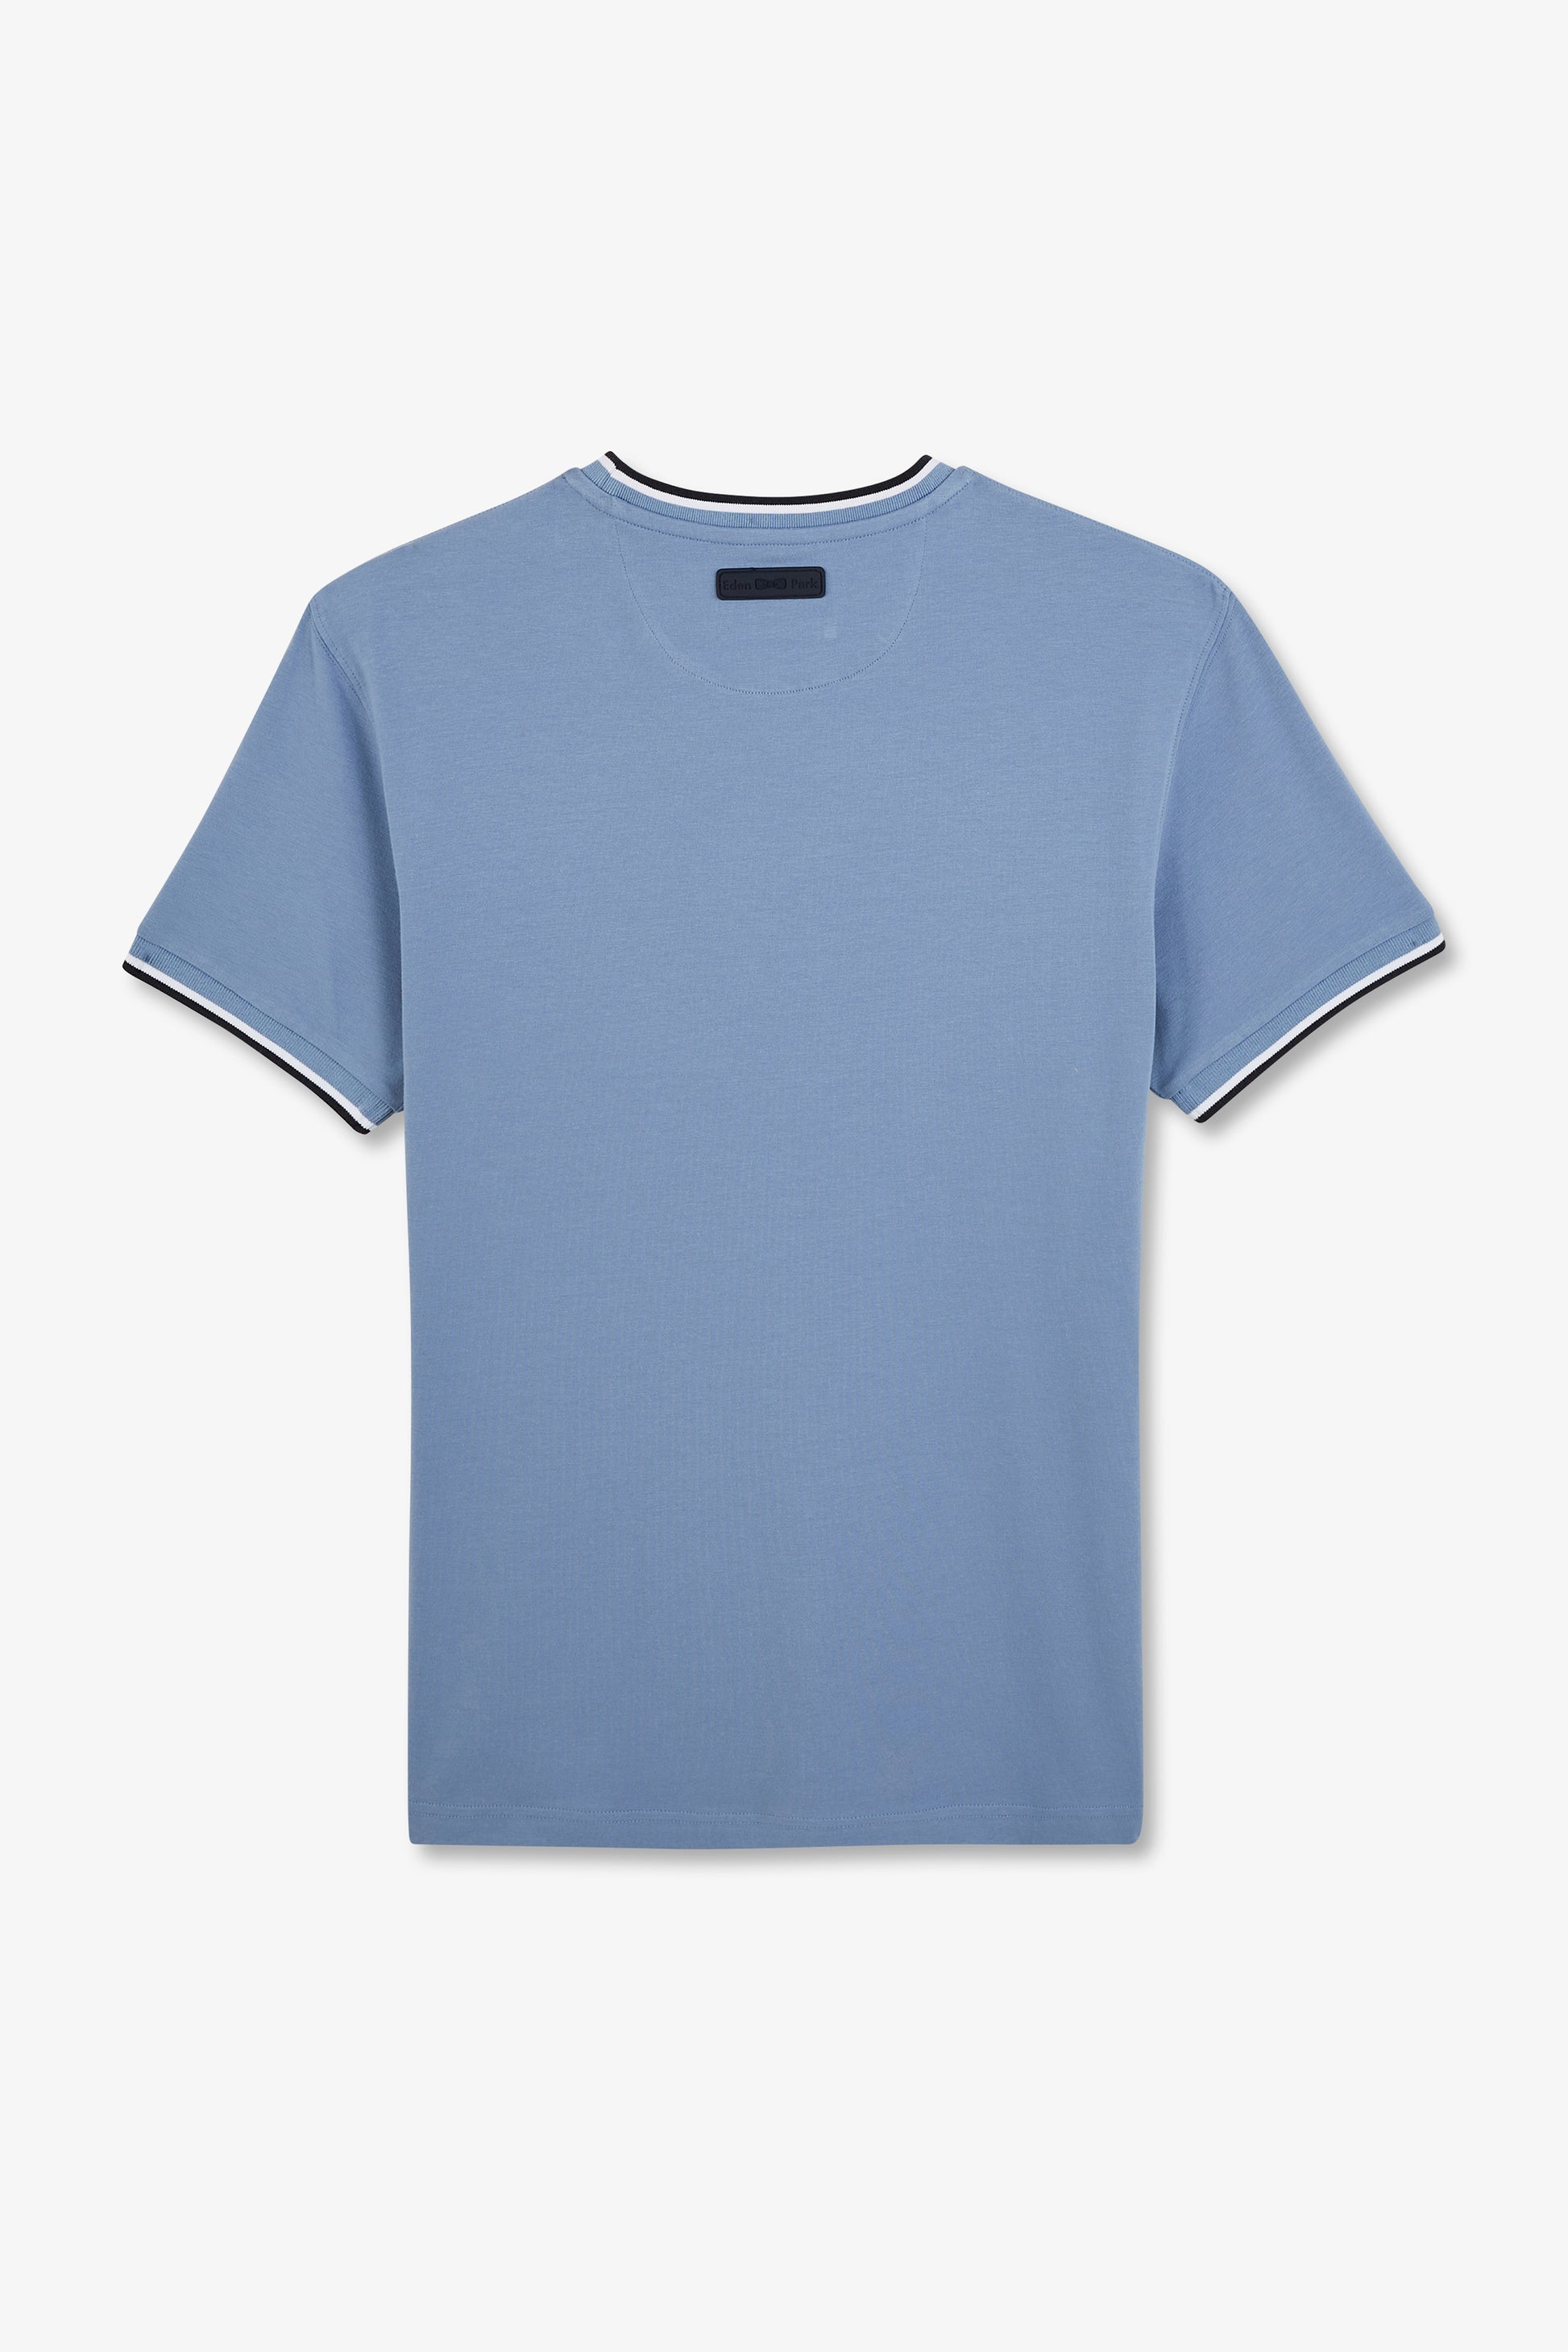 T-shirt bleu uni à manches courtes